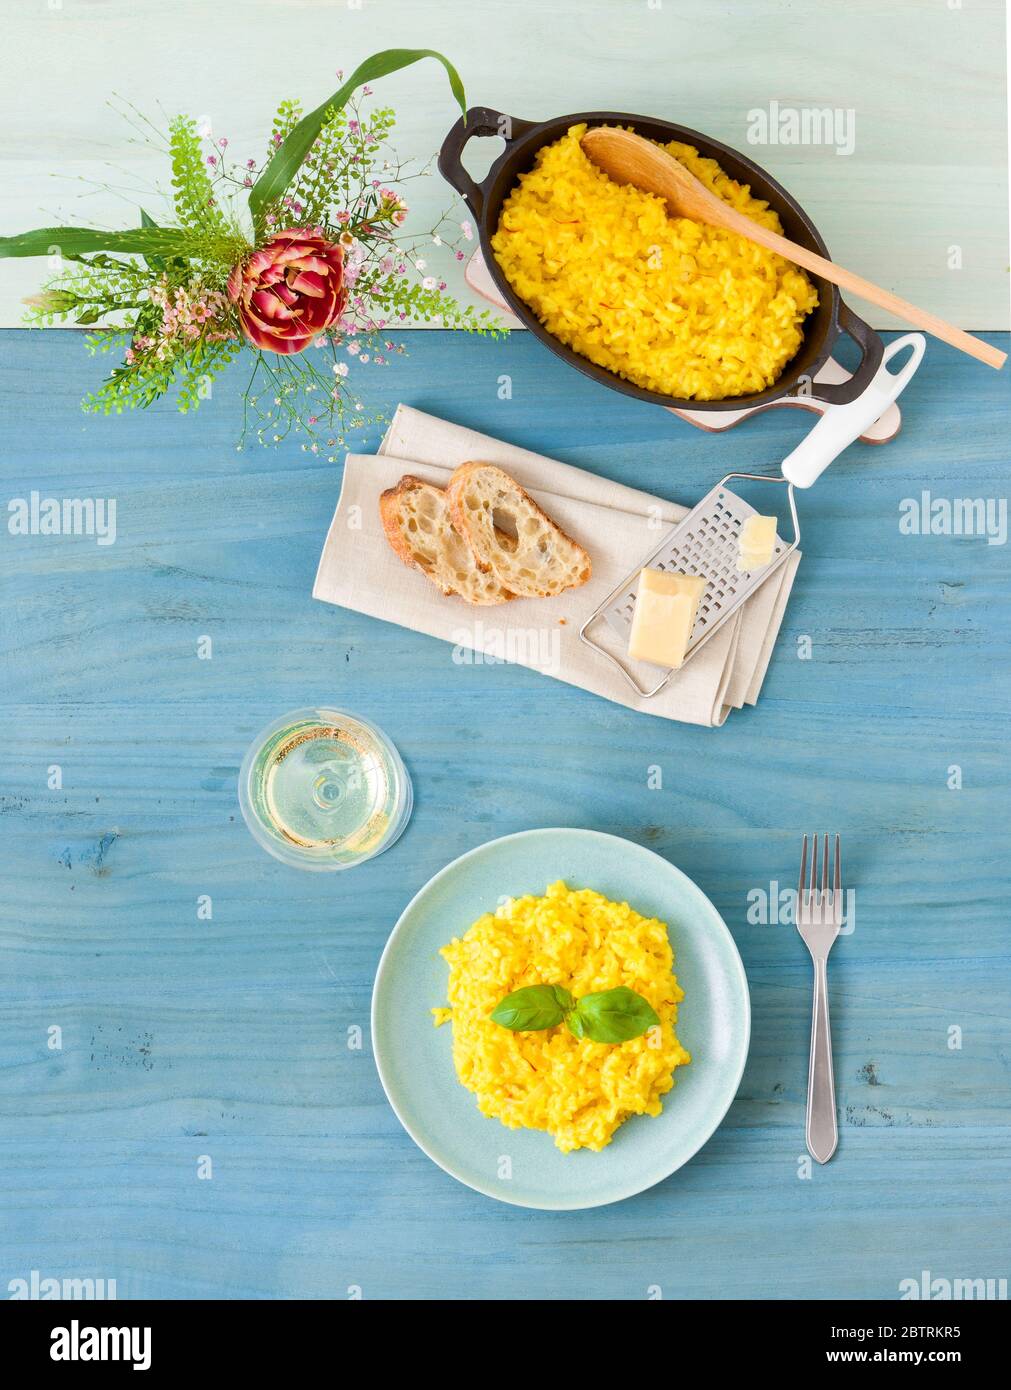 Risotto Milanese, mesa de madera con risotto de azafrán italiano tradicional, vasos y jarra de vino, botella de aceite de oliva, cesta de pan y flores Foto de stock